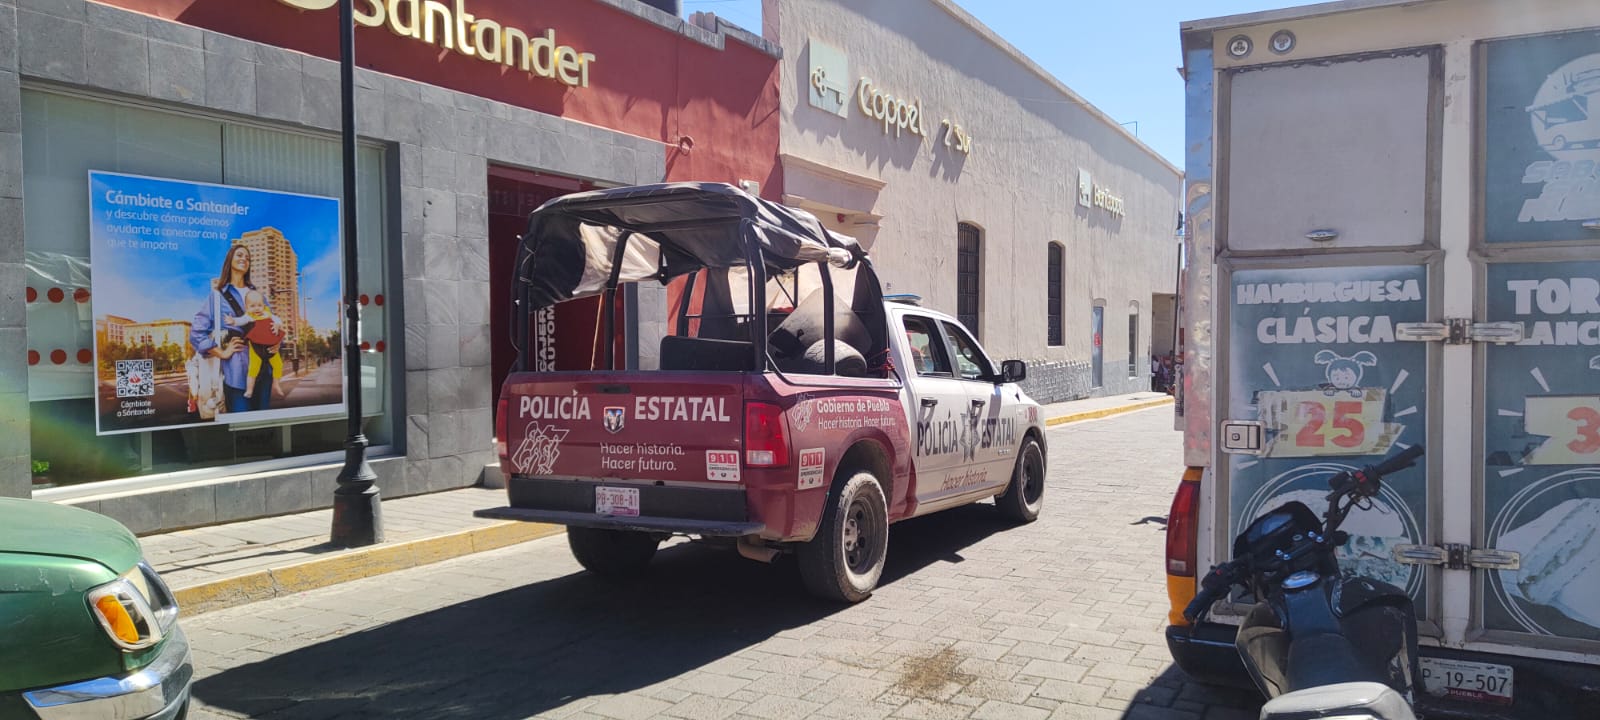 Tecamachalco, ayuntamiento fallido: En pleno centro asaltan a cuentahabiente de Bancoppel